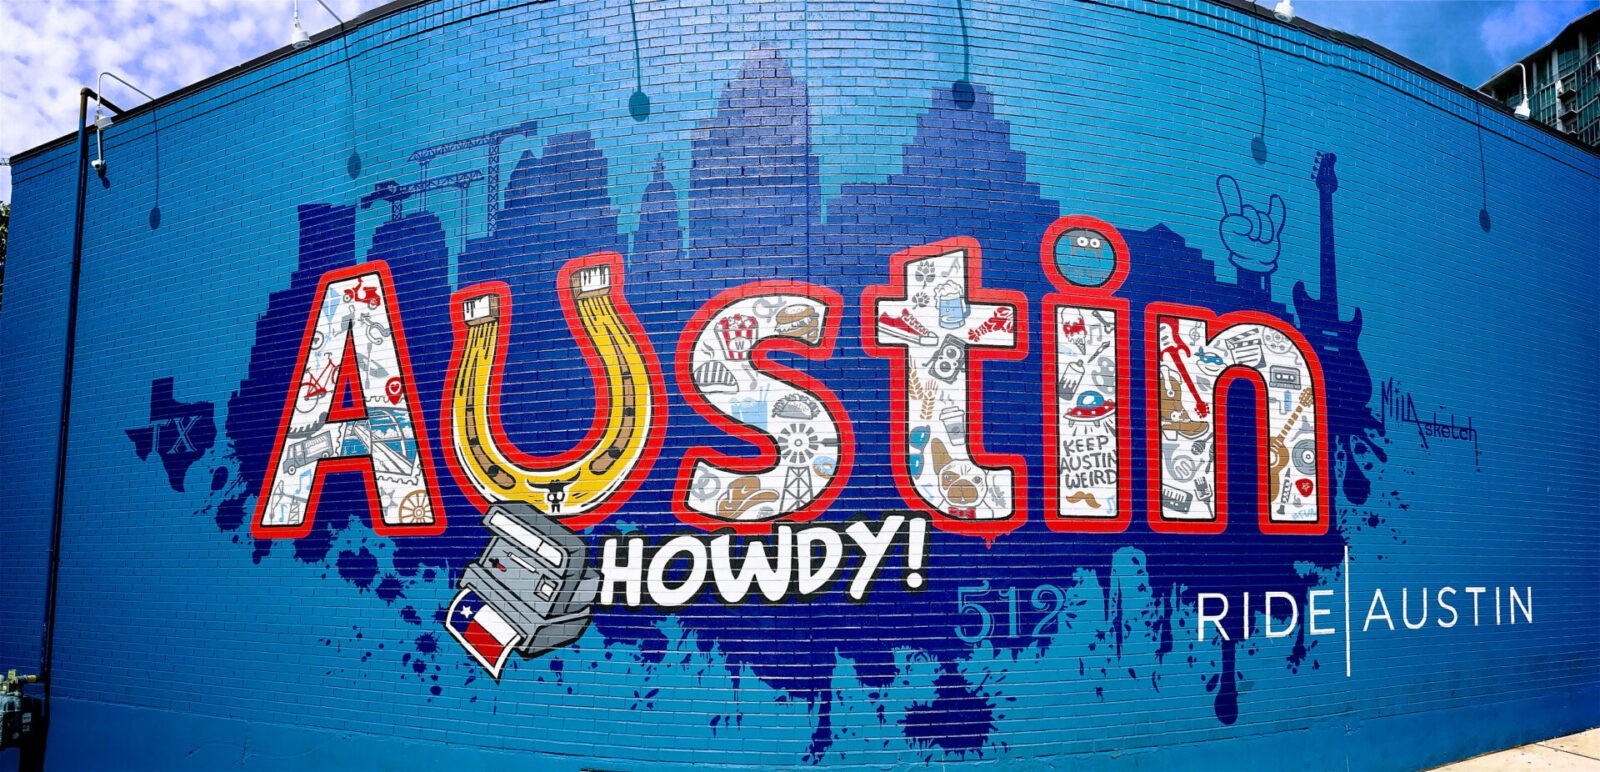 “Howdy Austin” Mural in Austin Texas